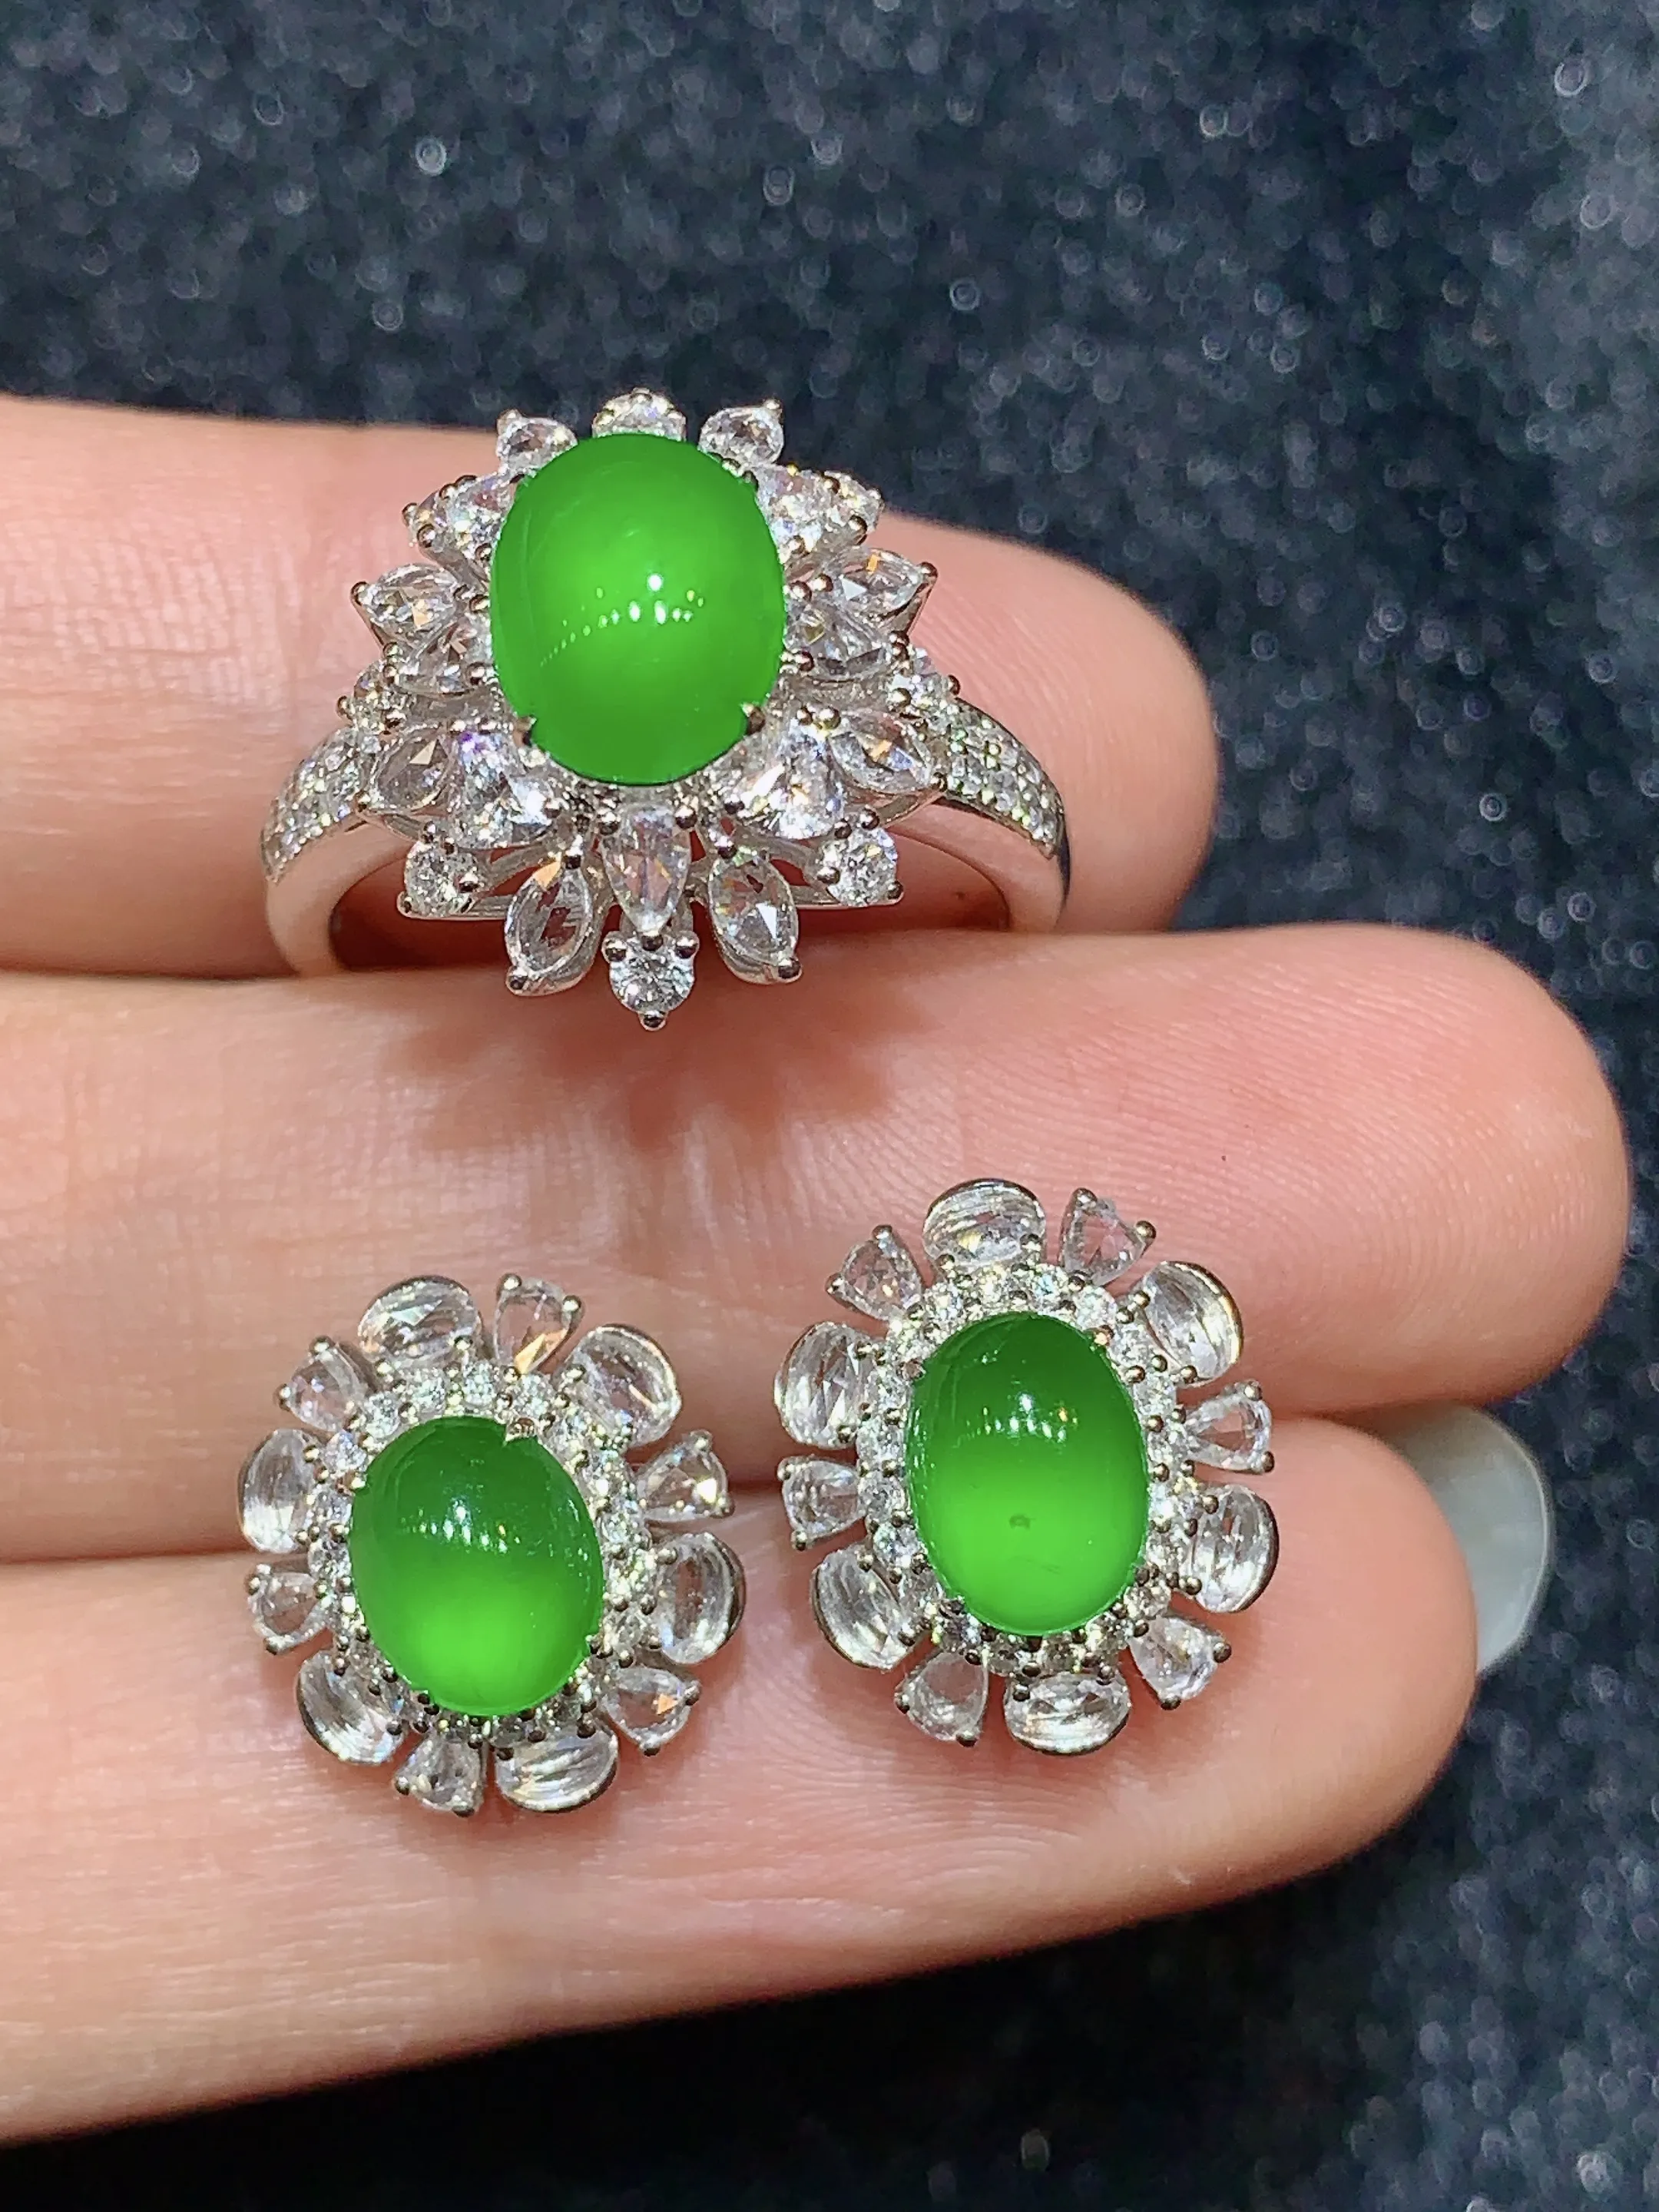 18k金钻镶嵌满绿蛋面戒指耳钉一套装 玉质细腻 色泽艳丽 高贵大气 优雅 戒指圈口13整体尺寸16.